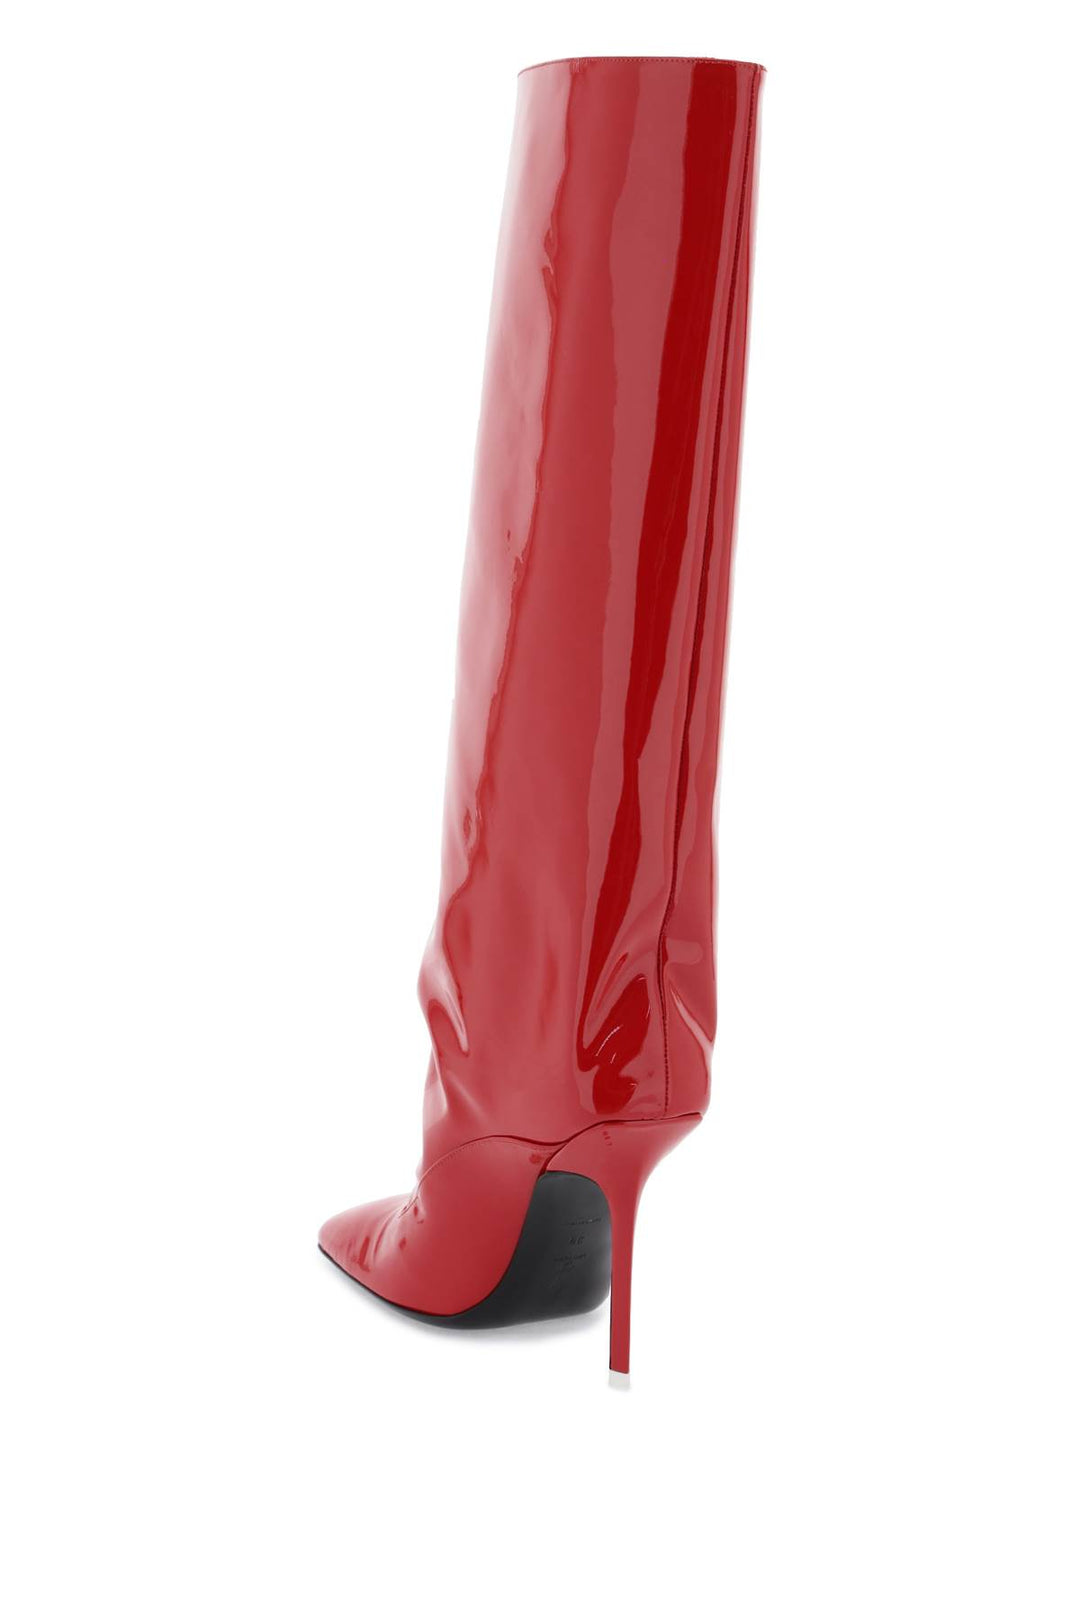 The Attico Sienna Tube Boots   Rosso